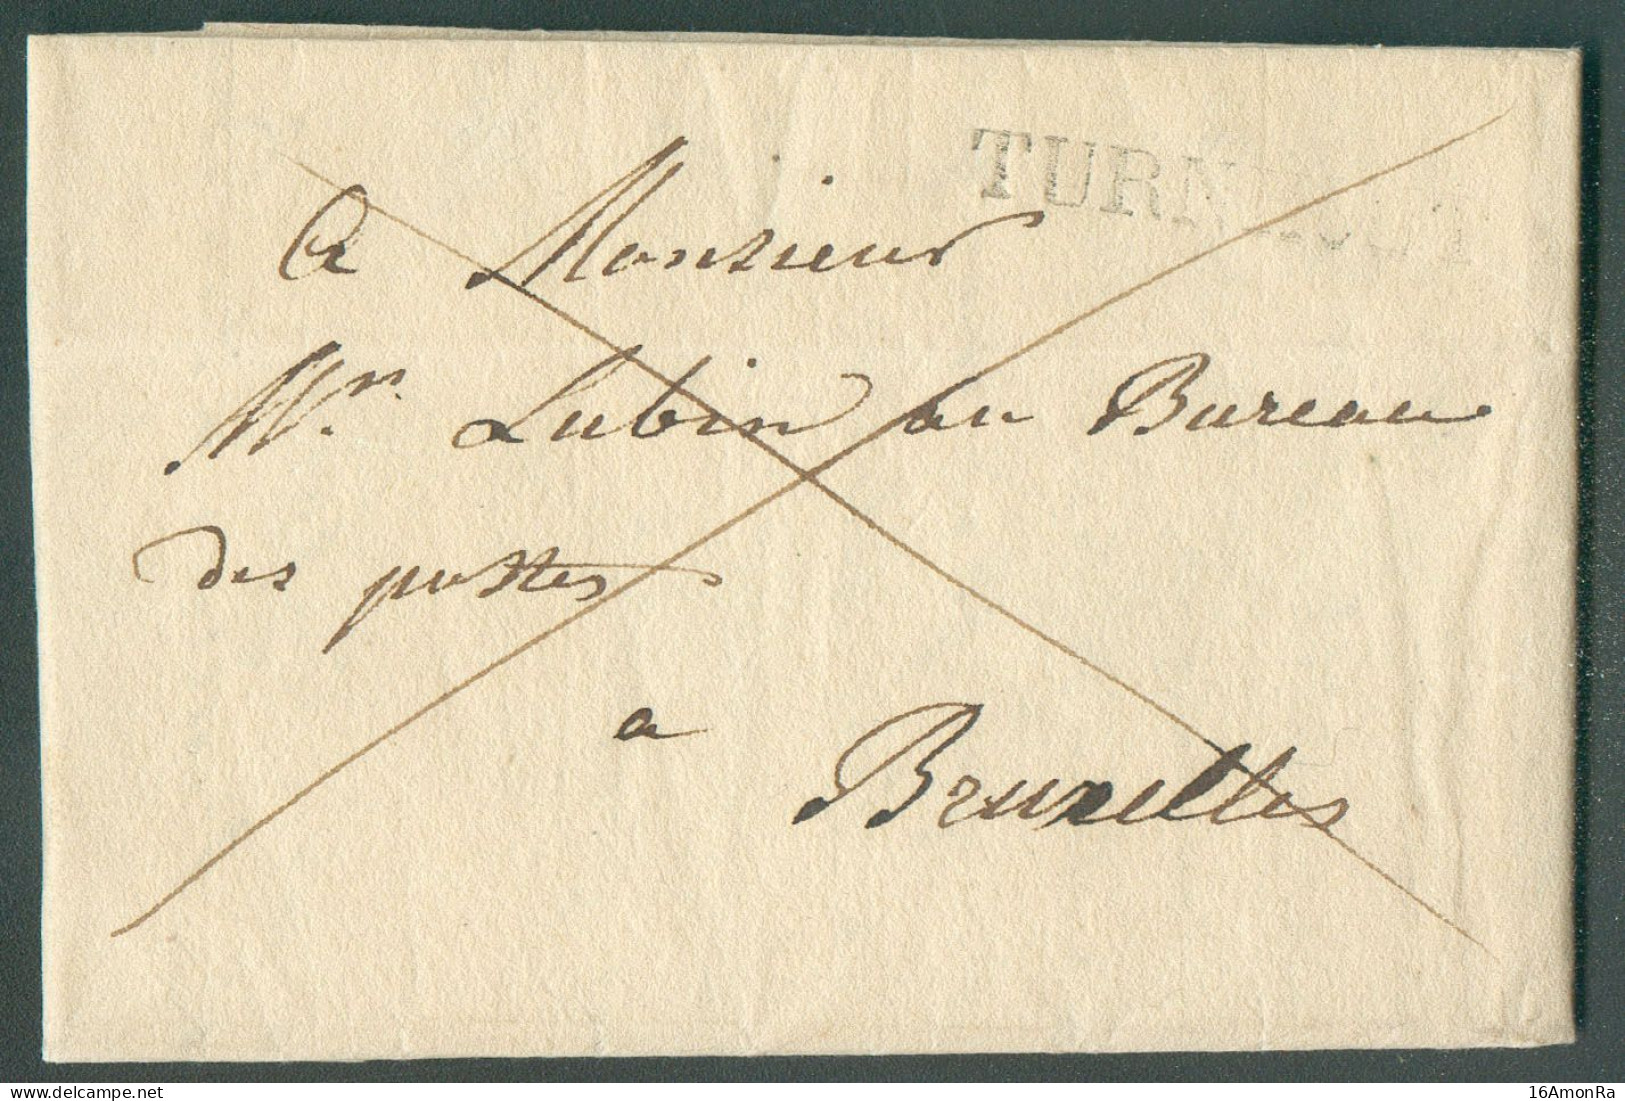 LAC De TURNHOUT le 4 Septembre 1828 Adressée En Franchise De Port à Mr. Lubin, Au Bureau De Postes à Bruxelles.  Belle F - 1815-1830 (Periodo Olandese)